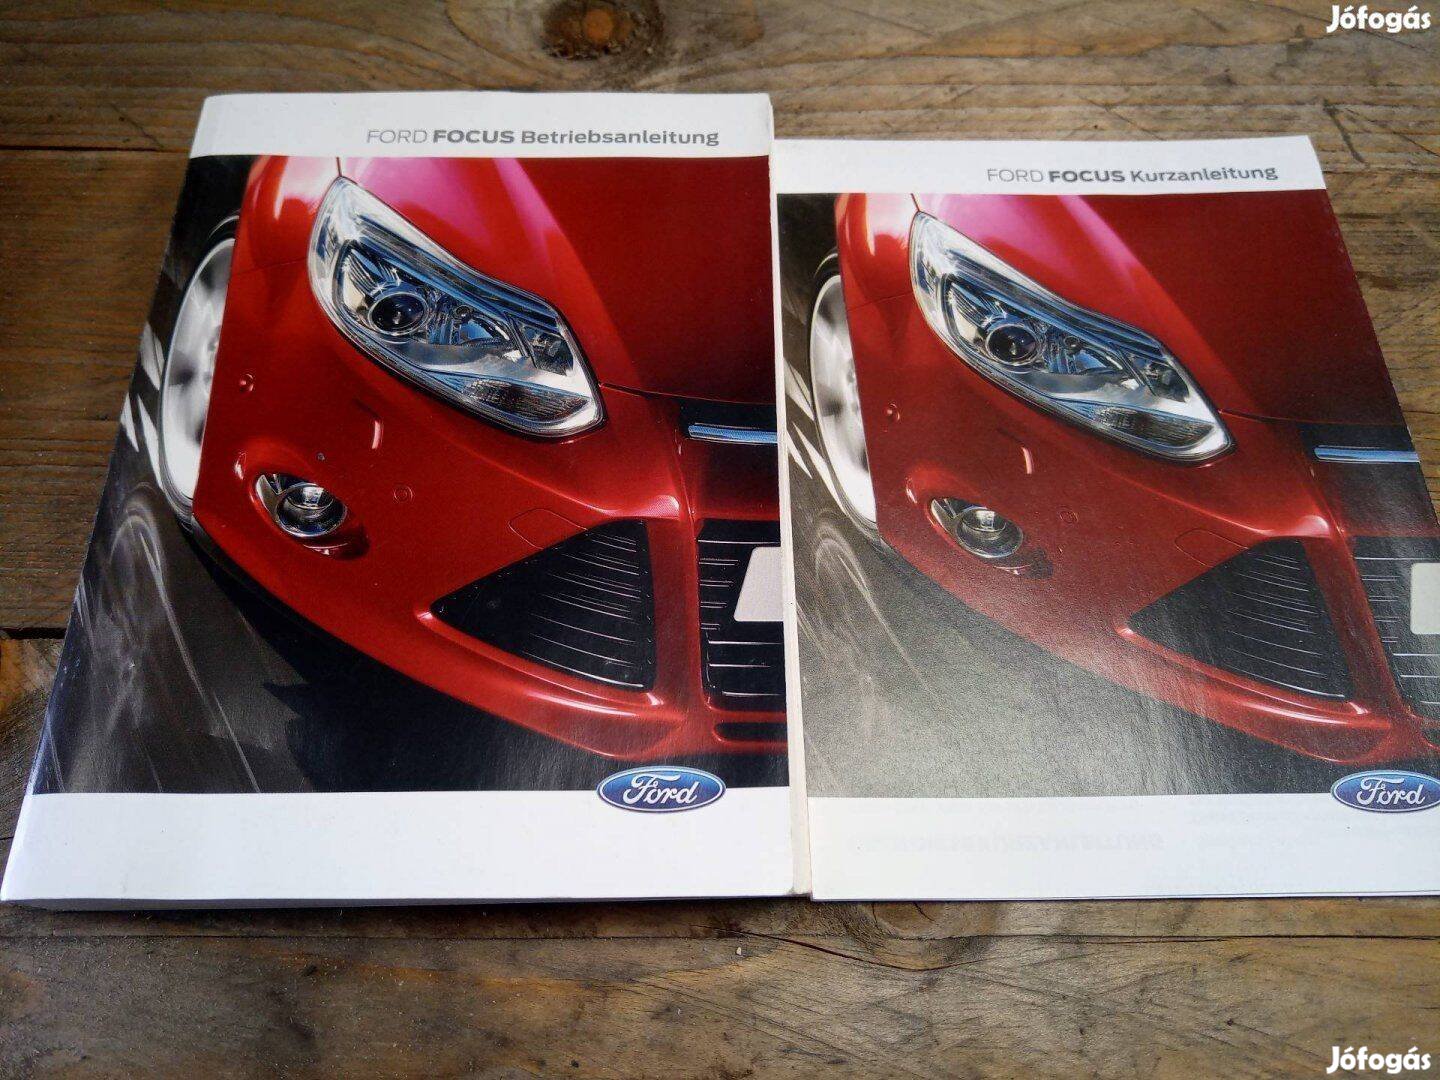 Eladó Ford focus MK3 szerelési kézikönyv 2011 től német nyelvű